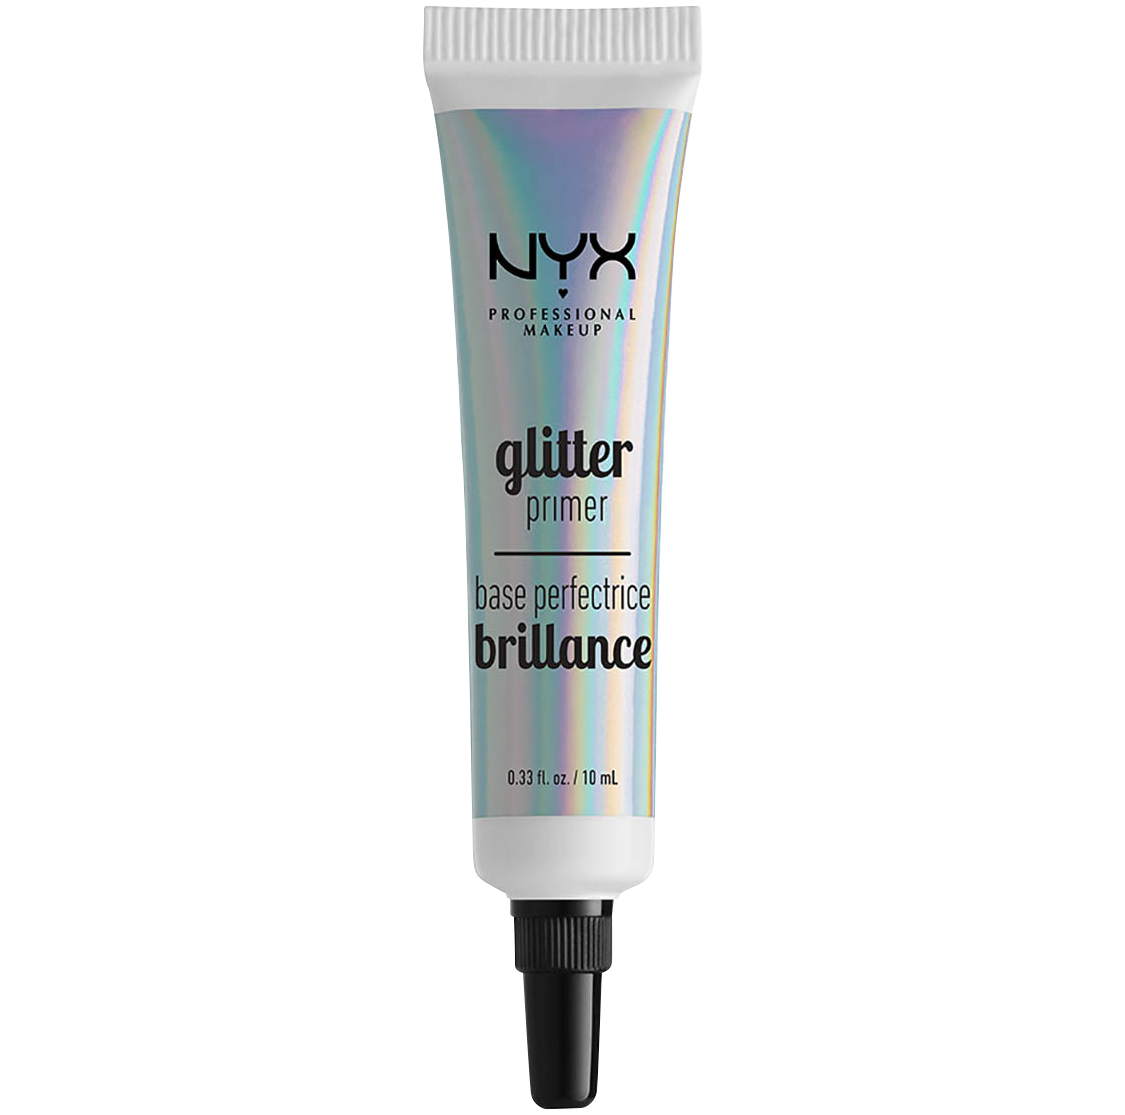 NYX праймер для глиттера. NYX professional Makeup. NYX professional основа под макияж. База под глиттер НИКС.